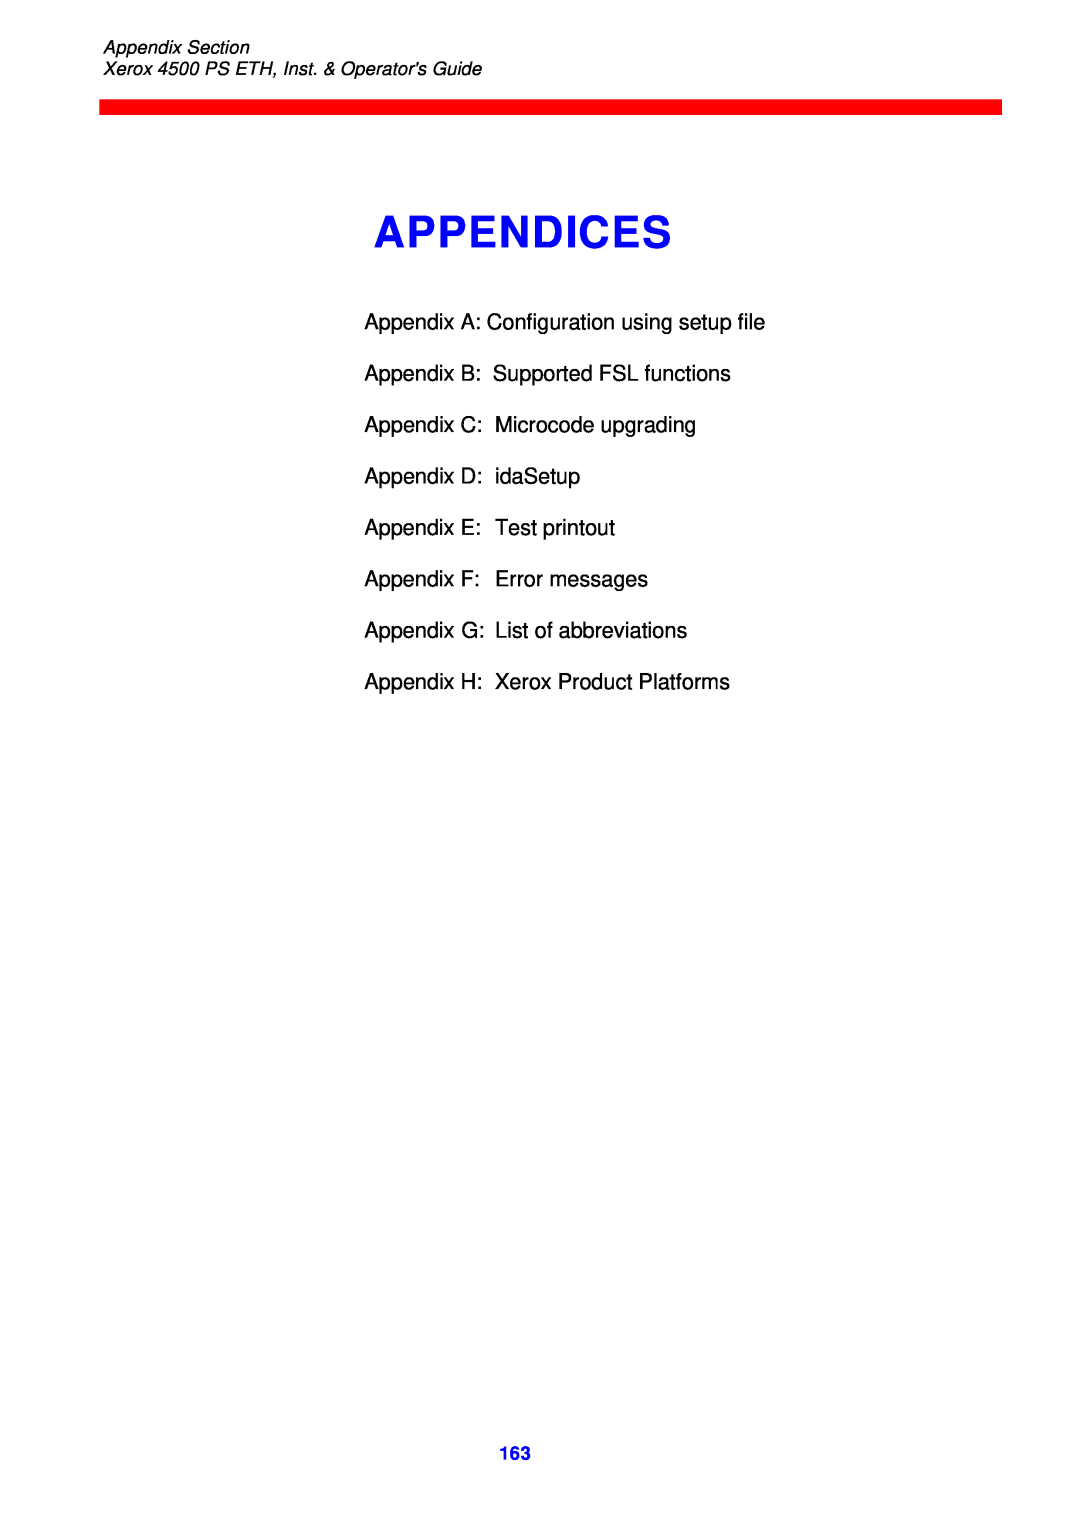 Xerox 4500 ps eth Appendices, Appendix A Configuration using setup file, Appendix D idaSetup Appendix E Test printout 